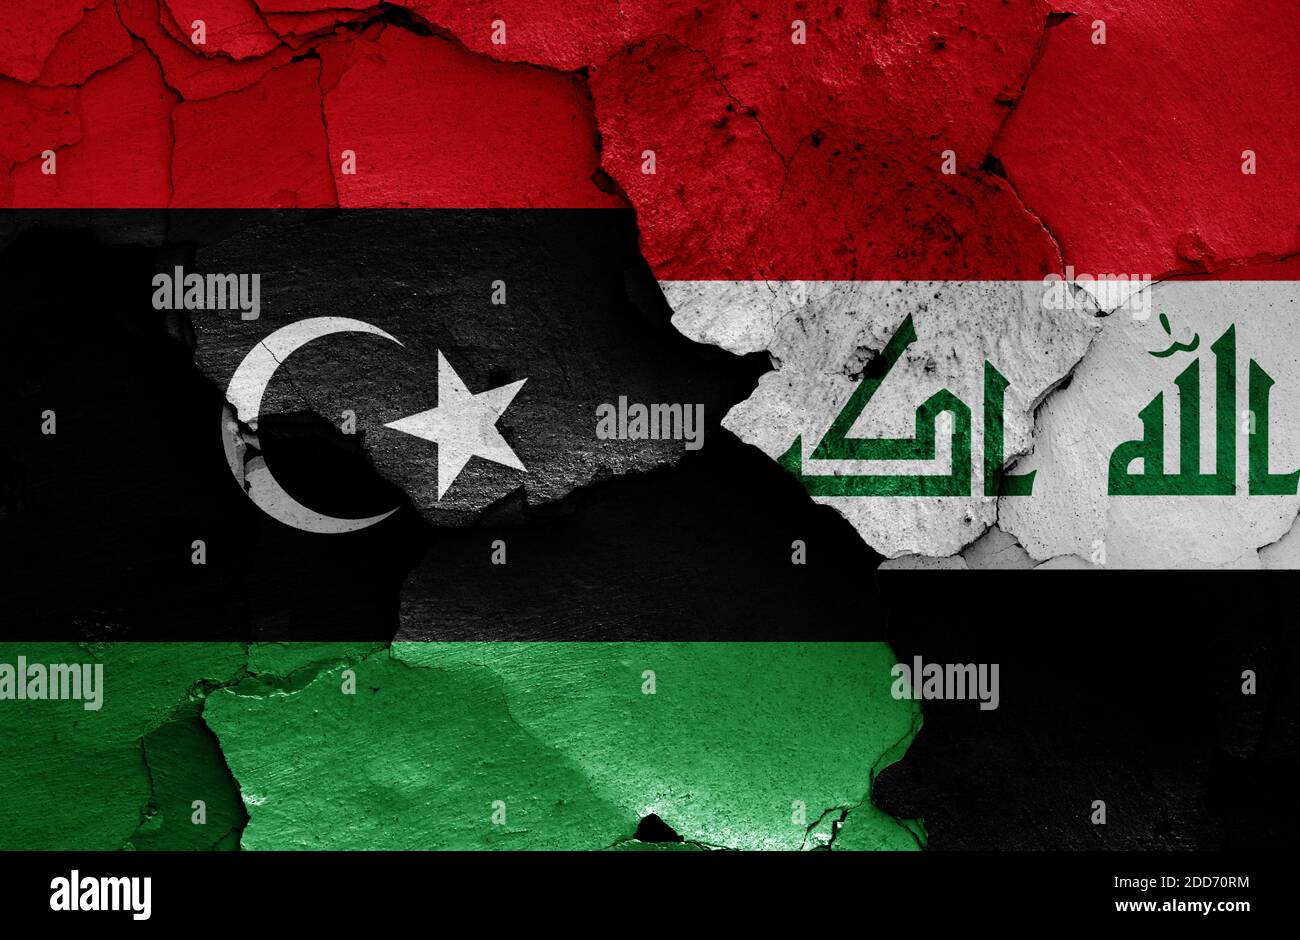 Les drapeaux de la Libye et de l'Irak sont peints sur un mur fissuré Banque D'Images